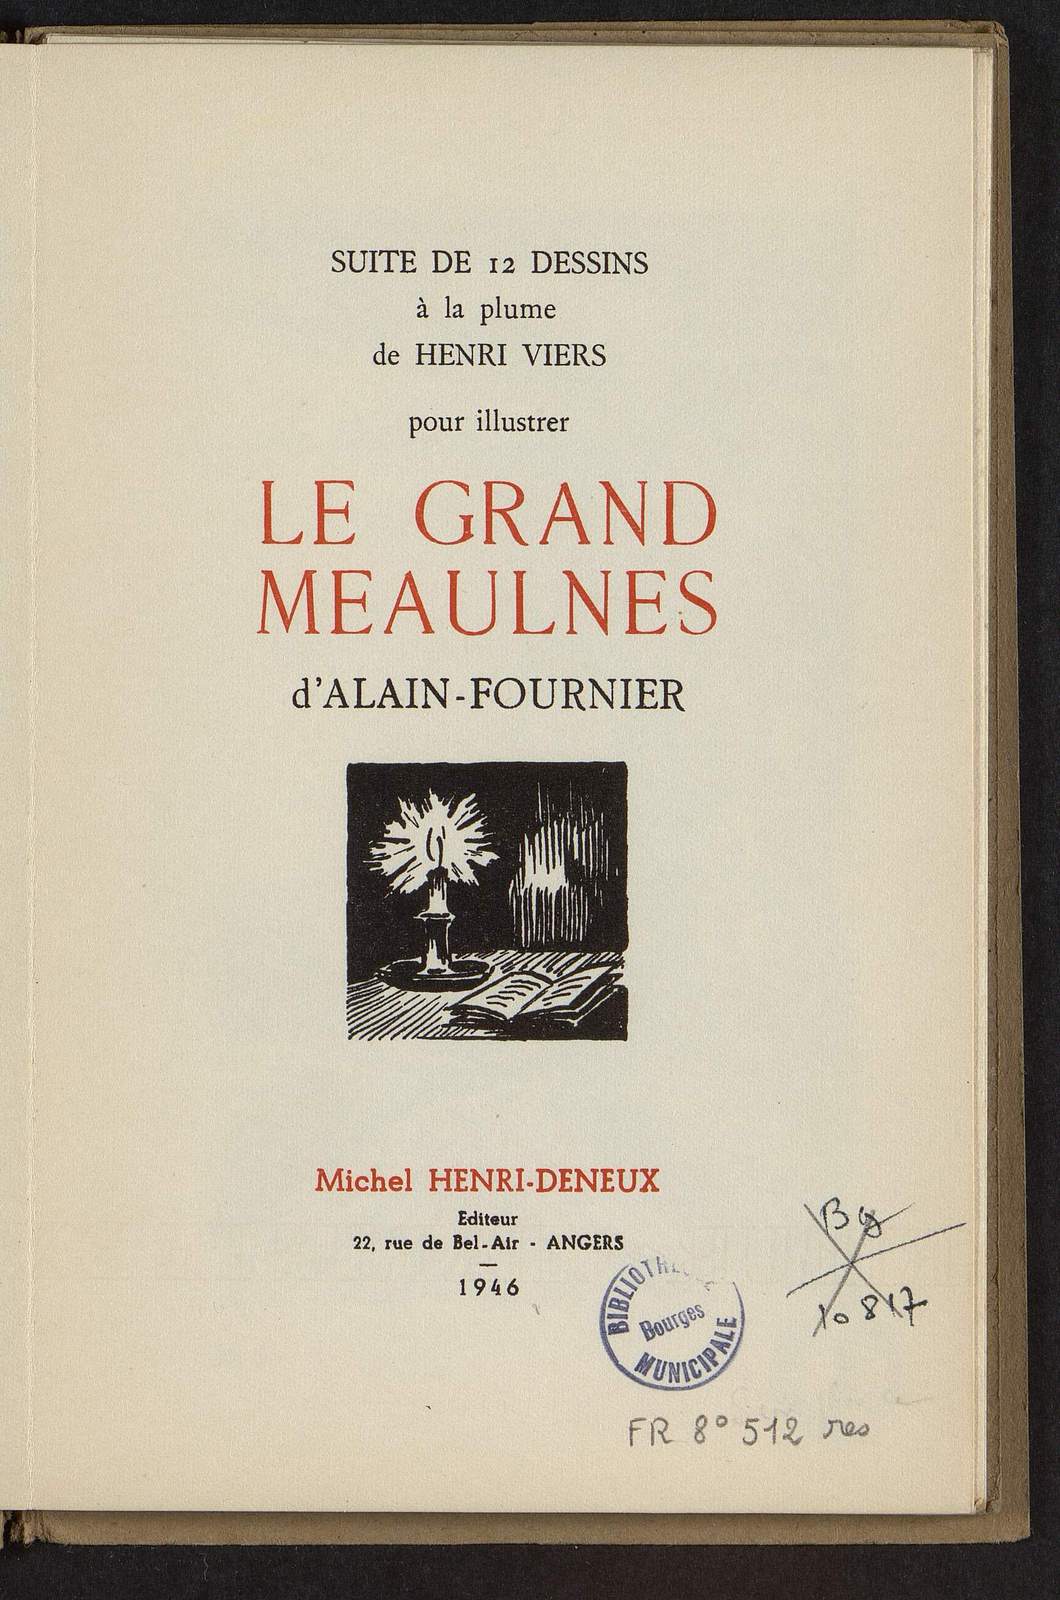 Suite de 12 dessins à la plume pour Le Grand Meaulnes d'Alain-Fournier, Une halte, par Henri Viers, Michel Henri-Deneux éditeur, 1946